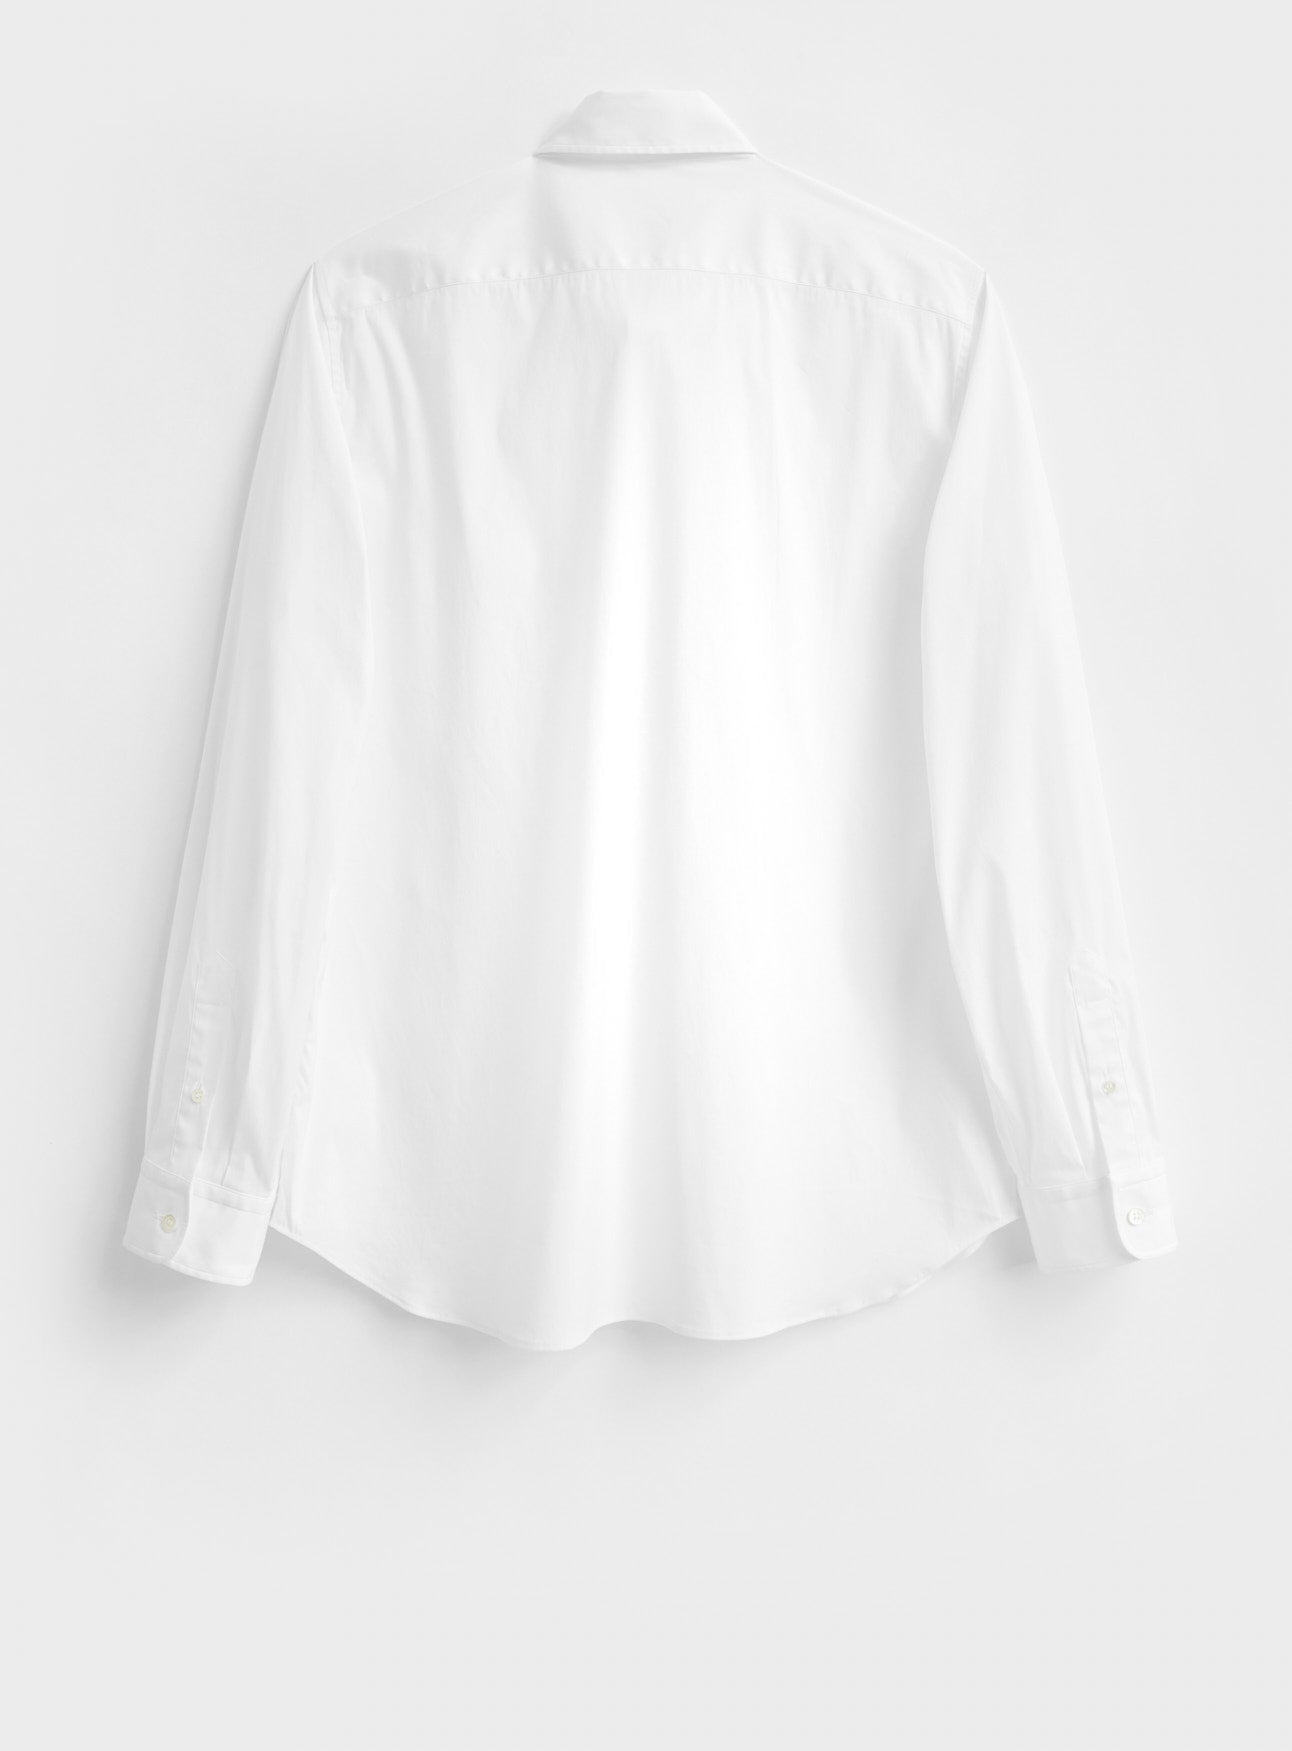 popover shirt, long sleeve white shirt